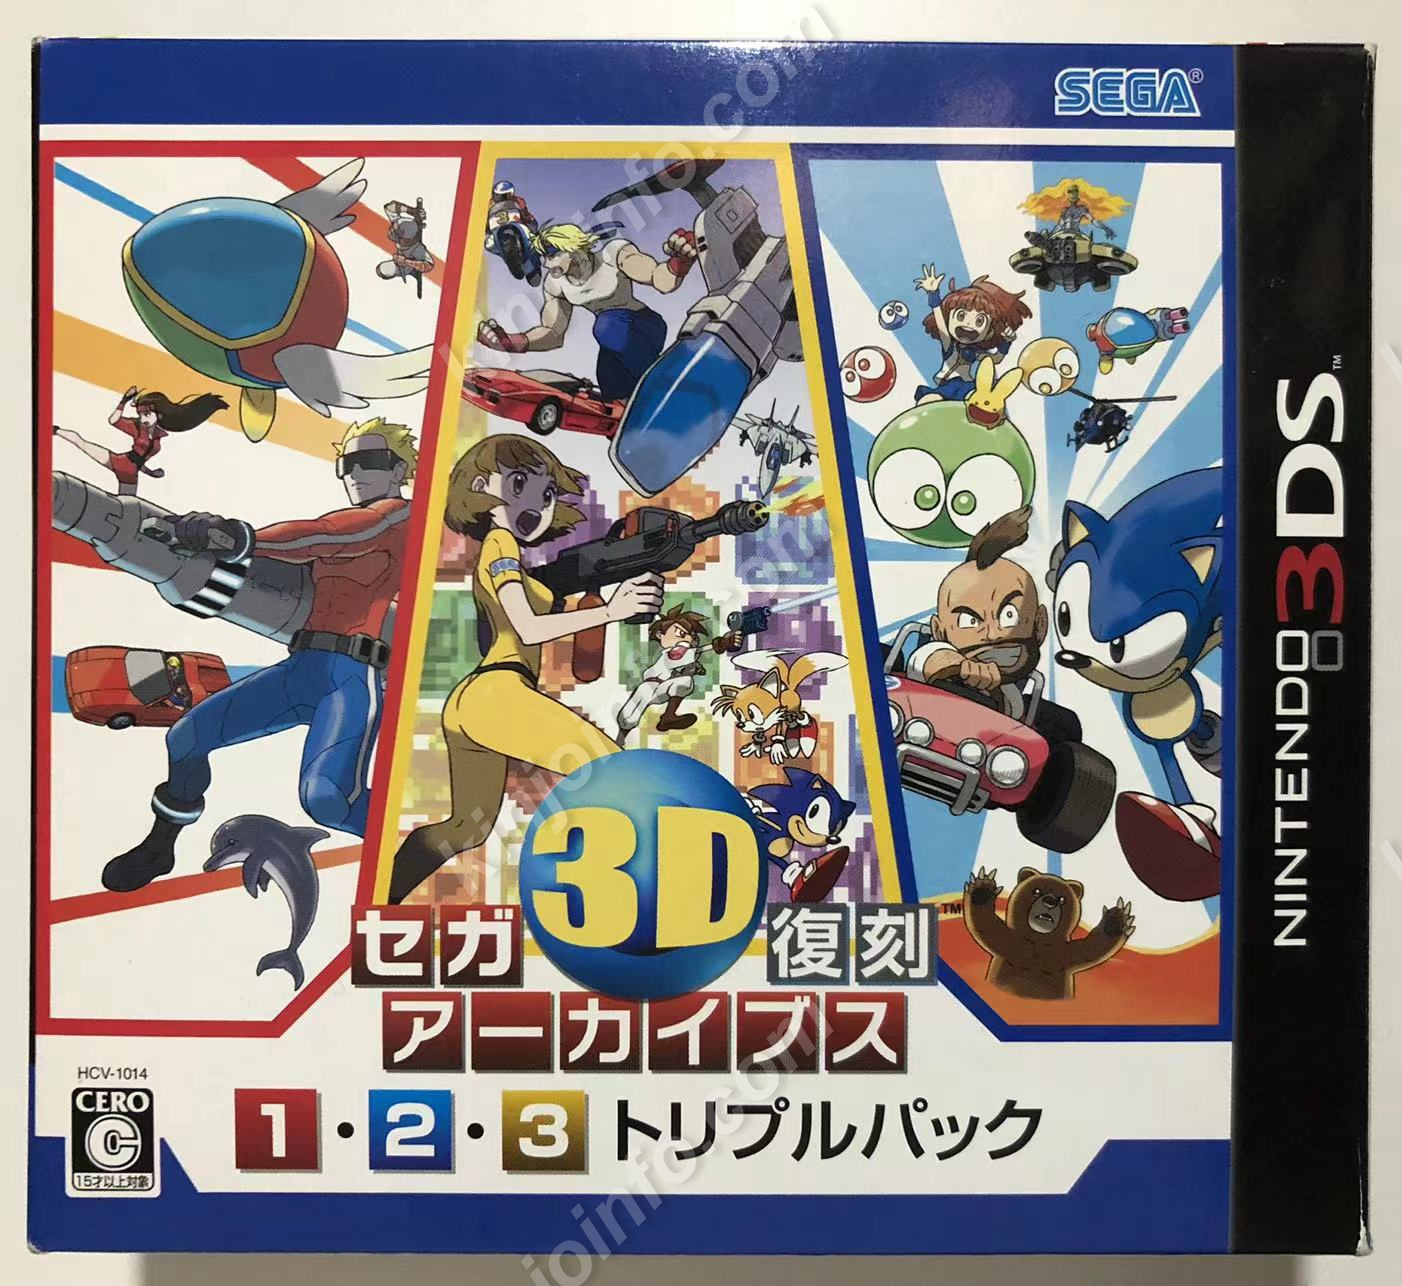 セガ3D復刻アーカイブス1・2・3 トリプルパック【中古美品・通常版・3DS日本版】